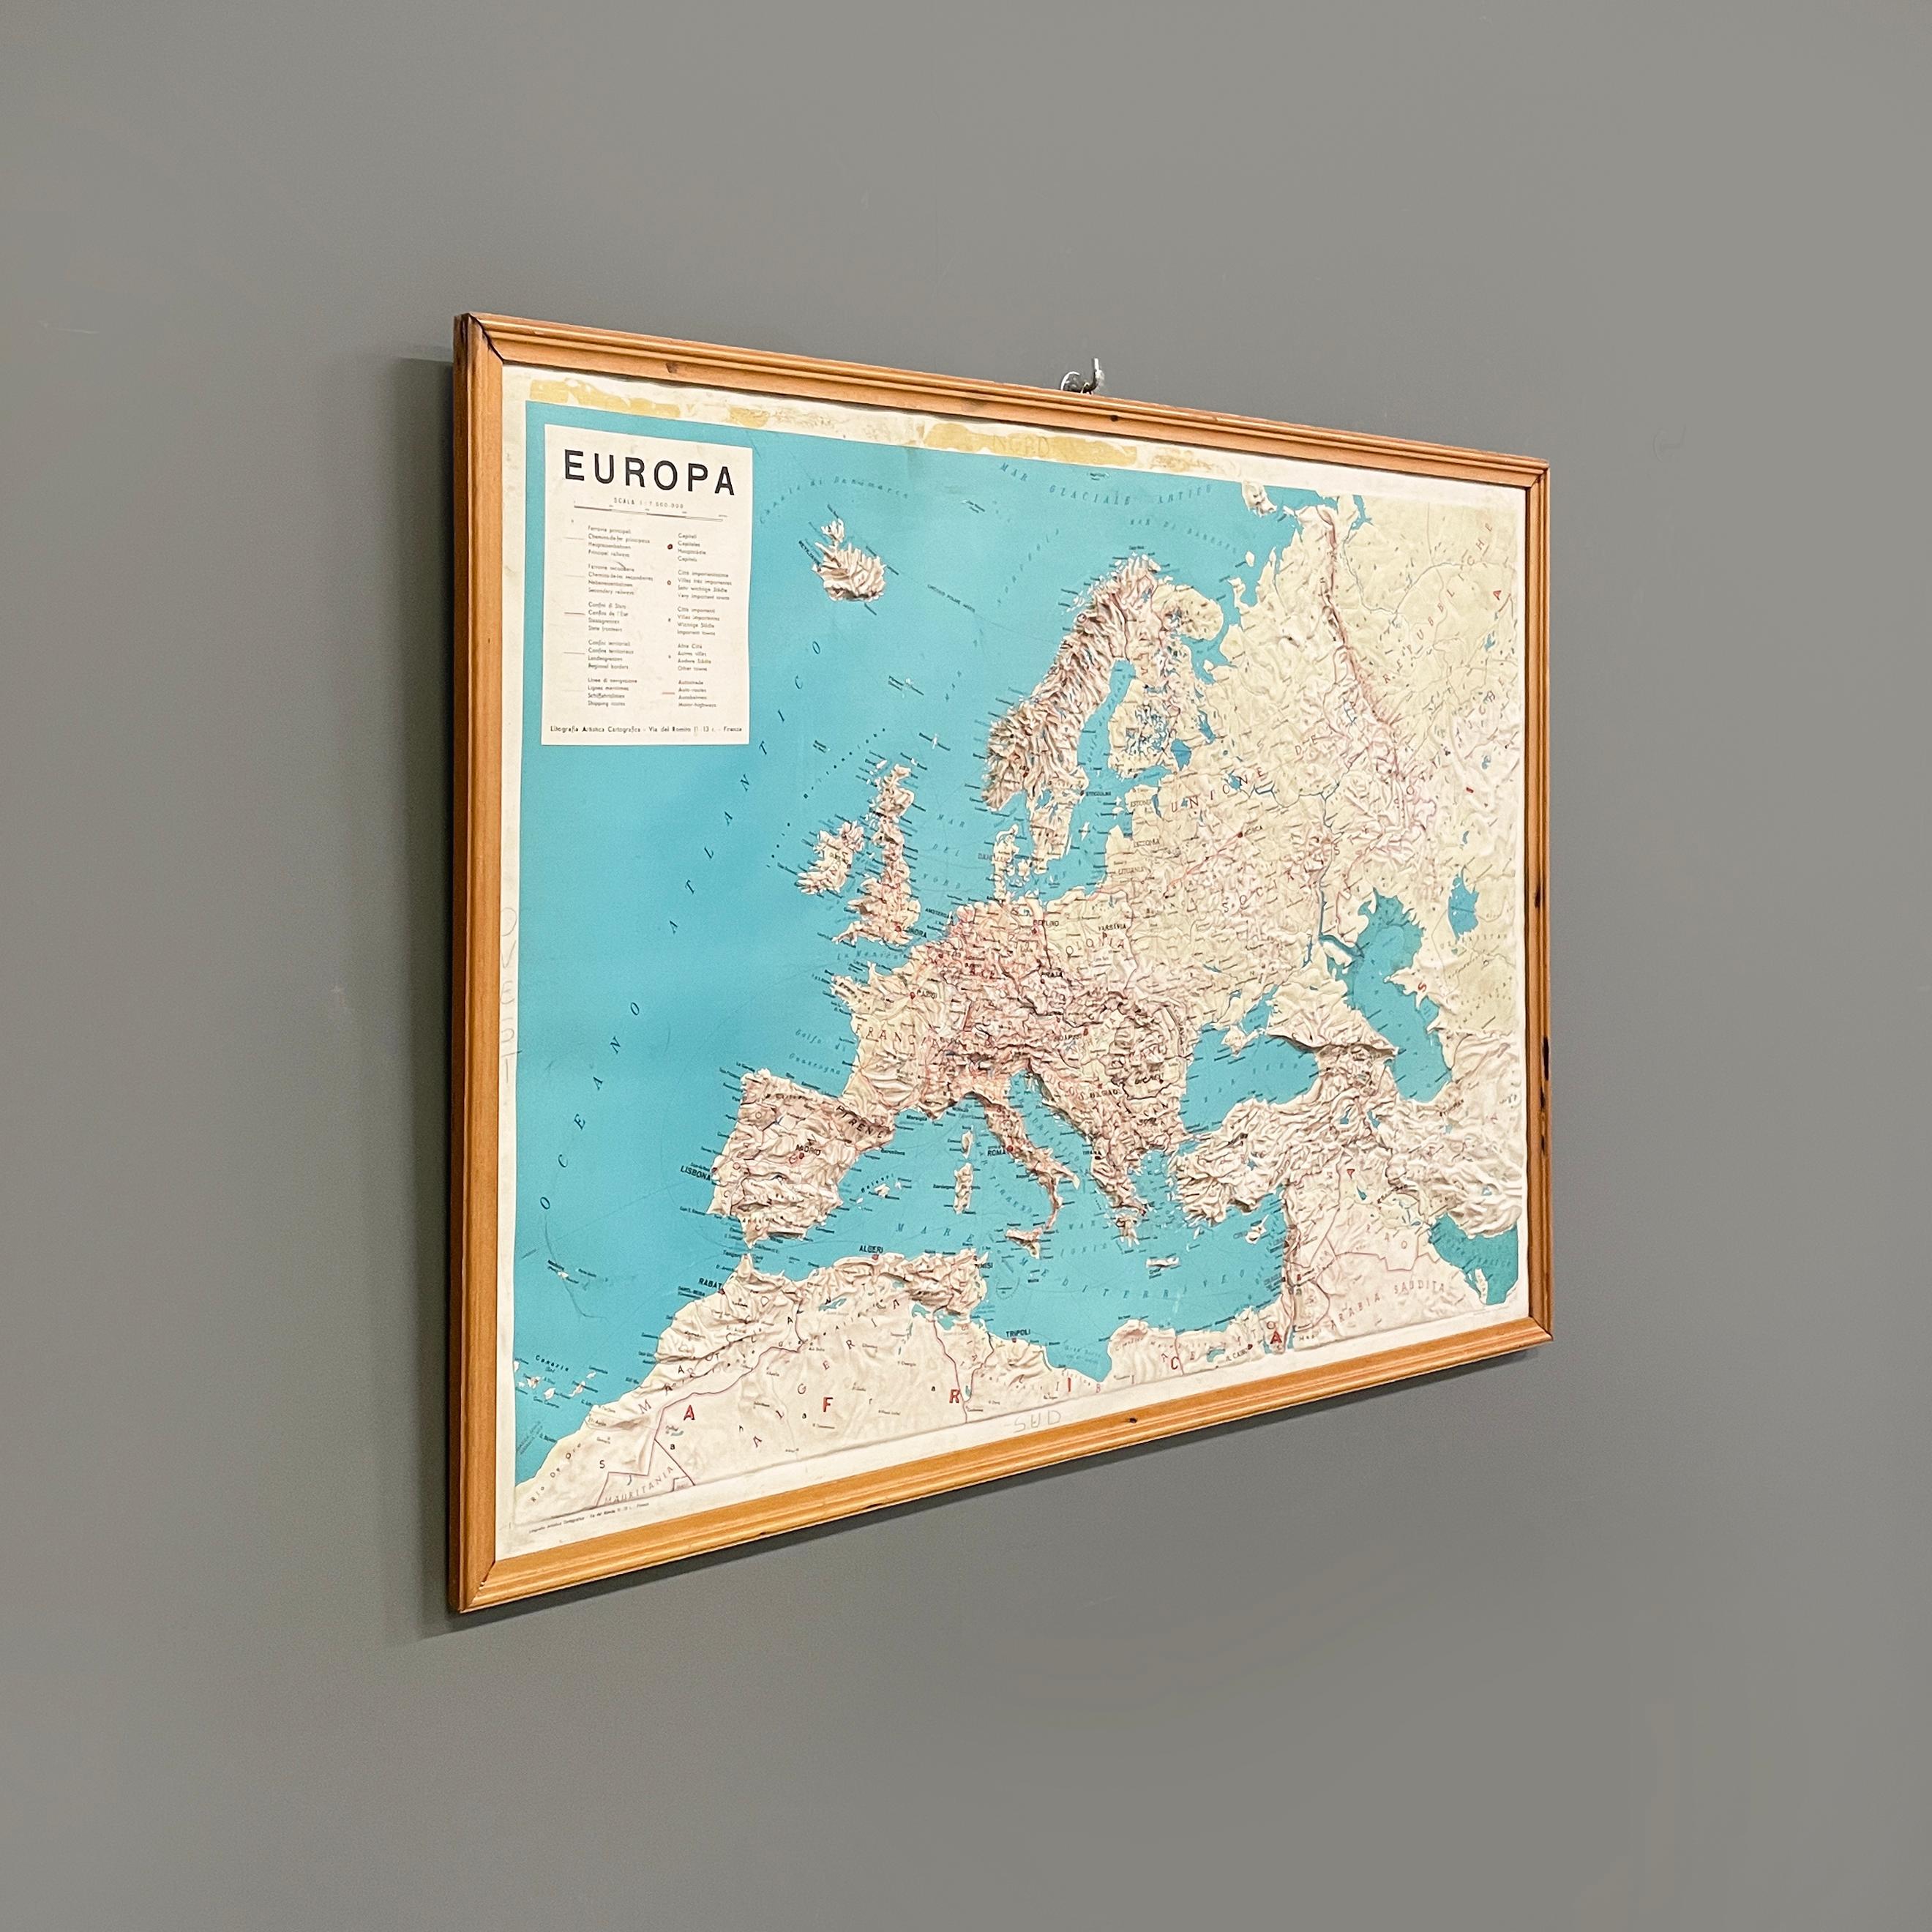 Italienische moderne geografische Karte in Holzrahmen von Europa, 1950er-1990er Jahre
Dreidimensionale geografische Karte von Europa auf Papier. Die topographische Karte stellt die Staaten mit ihren jeweiligen Gebirgszügen im Relief dar. Die Farben